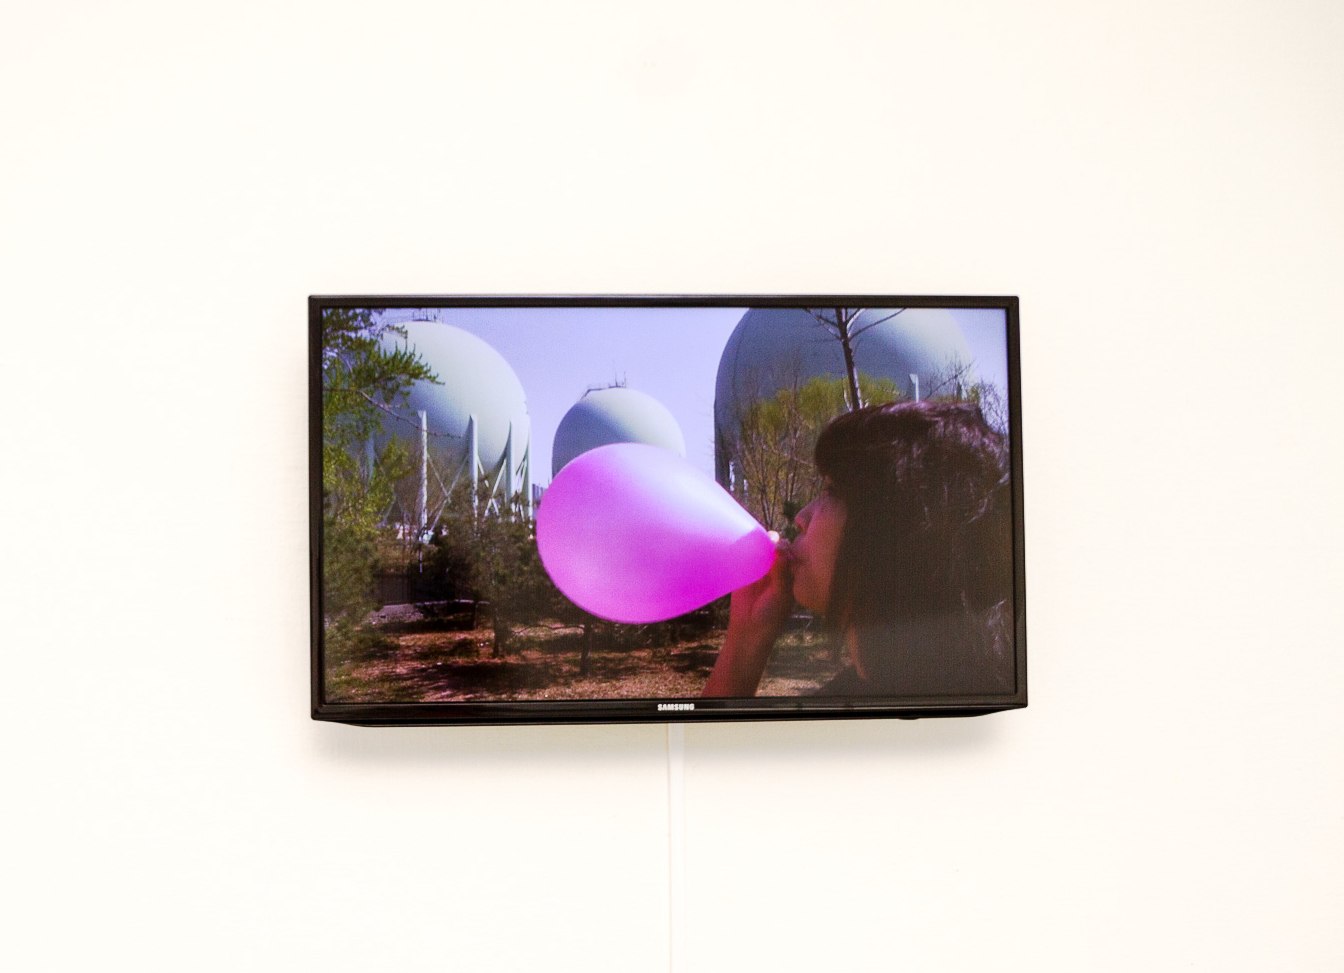 På en vitt vägg hänger en svart TV som visar en bild av en kvinna som står i ett naturområde och blåser upp en rosa ballong. I bakgrunden syns tre stora runda silos som är blåfärgade.